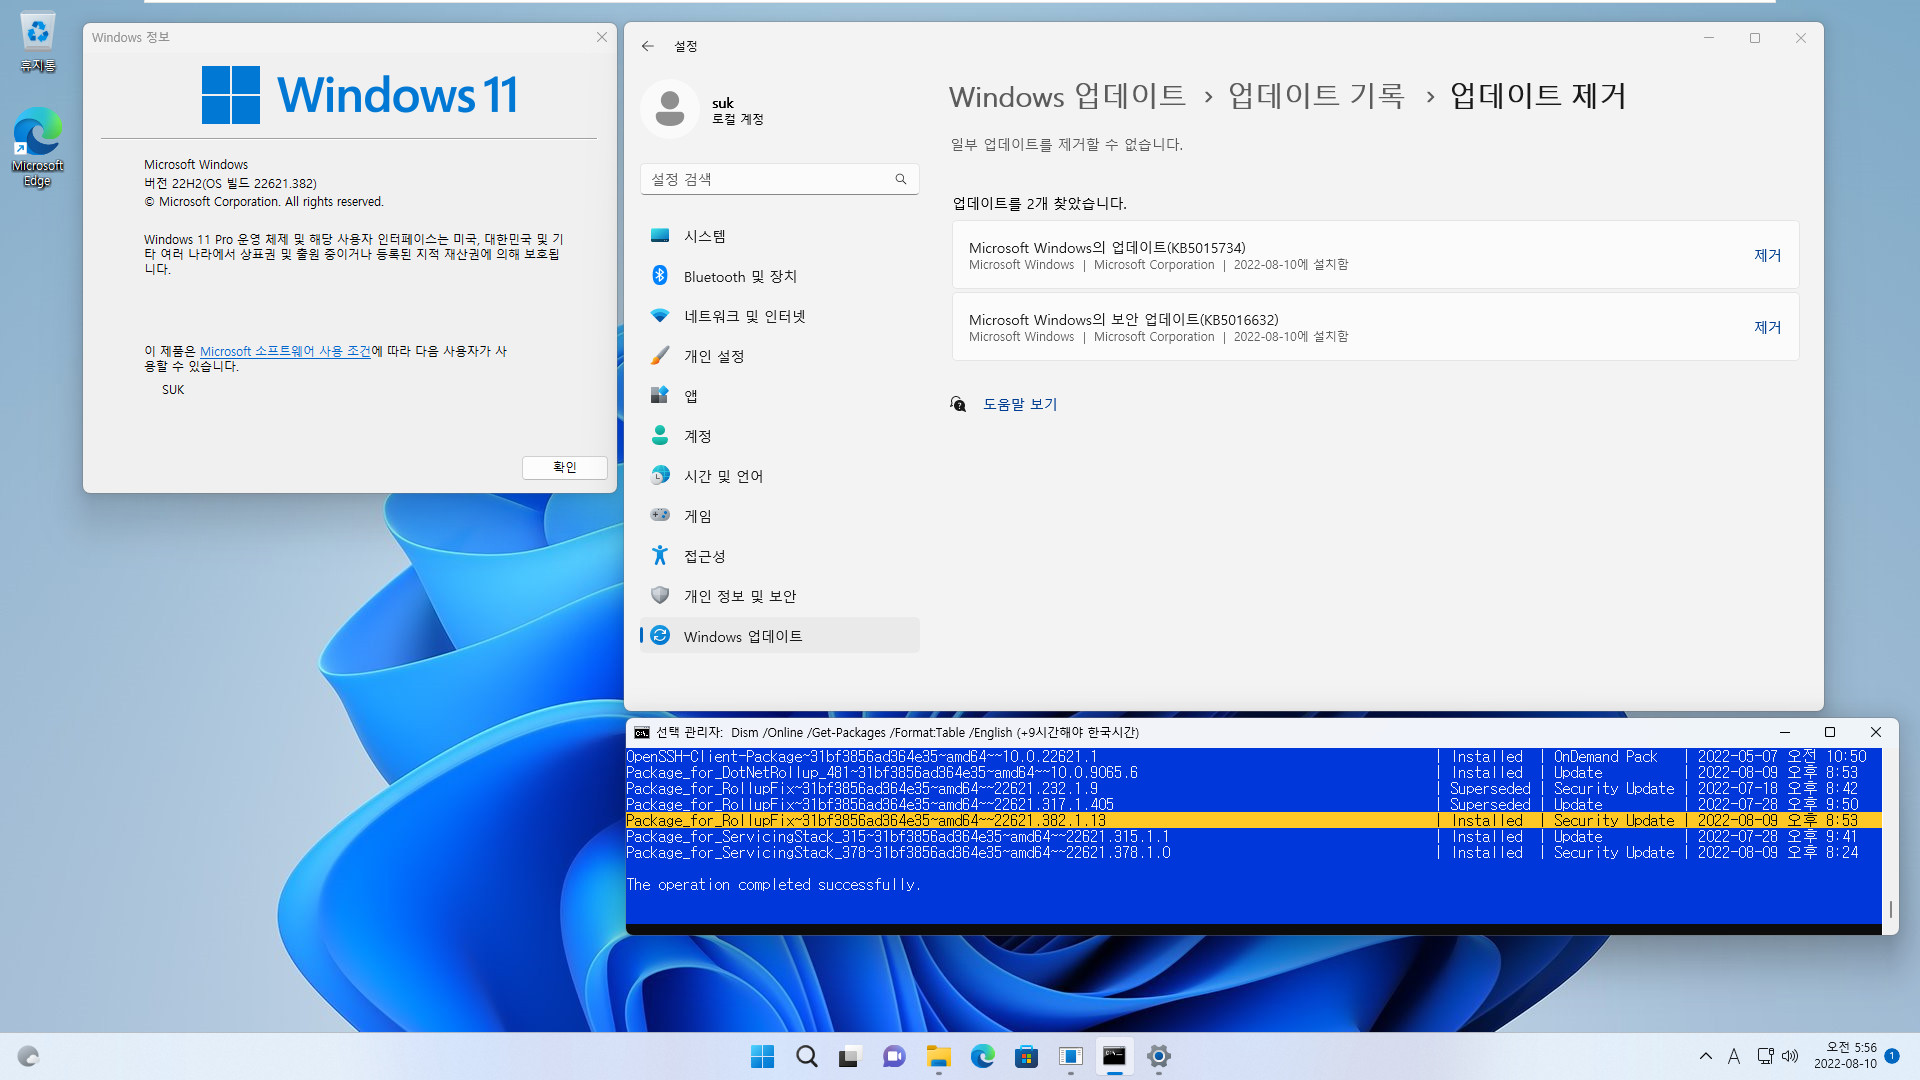 2022-08-10 수요일 - 릴리스 프리뷰 채널 - Windows 11 버전 22H2, 빌드 22621.382 - 누적 업데이트 KB5016632 - vmware에 설치 테스트 - 2022-08-10_055656.jpg